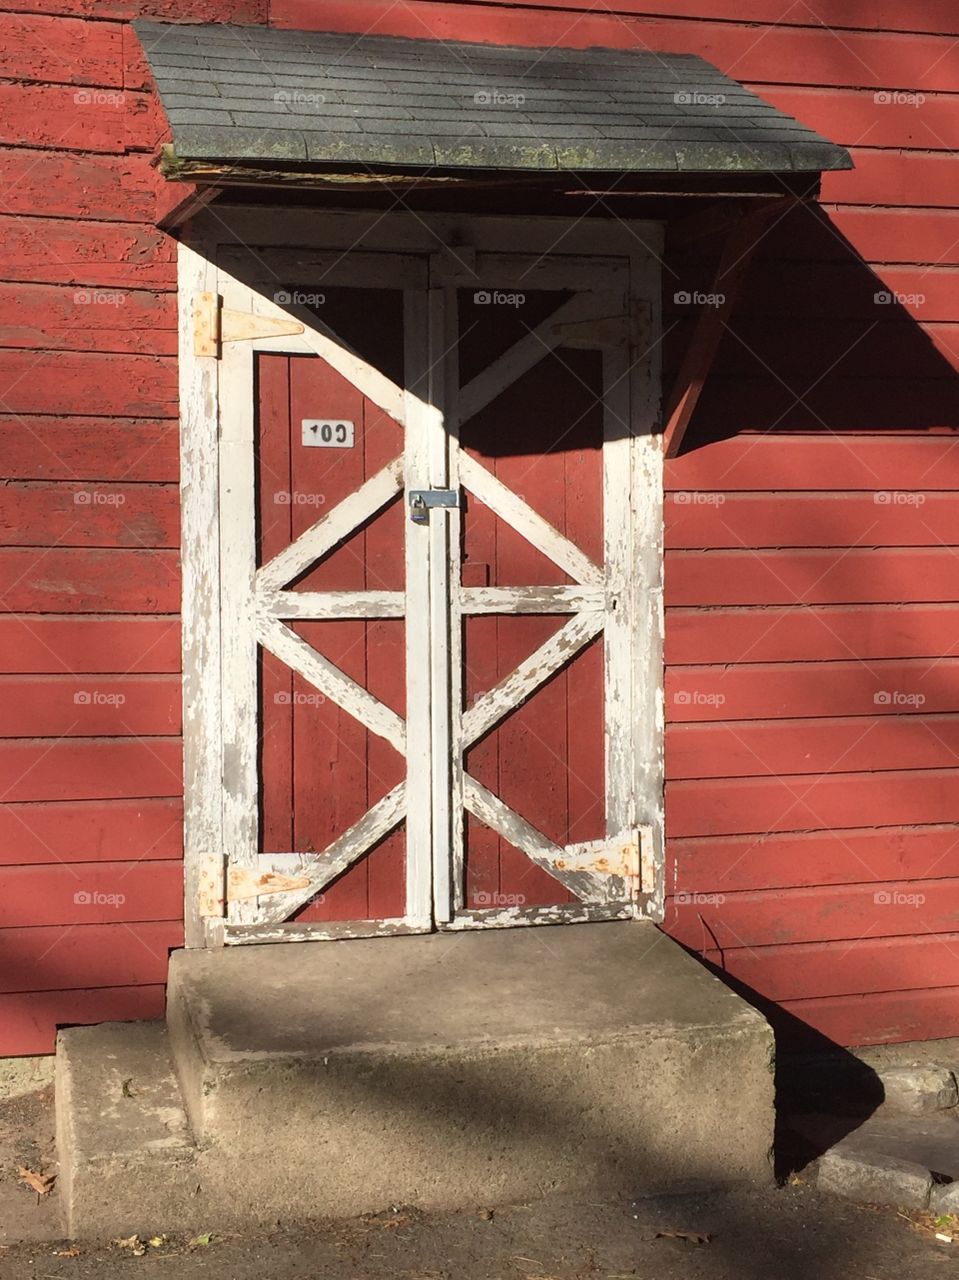 Just an old barn door...